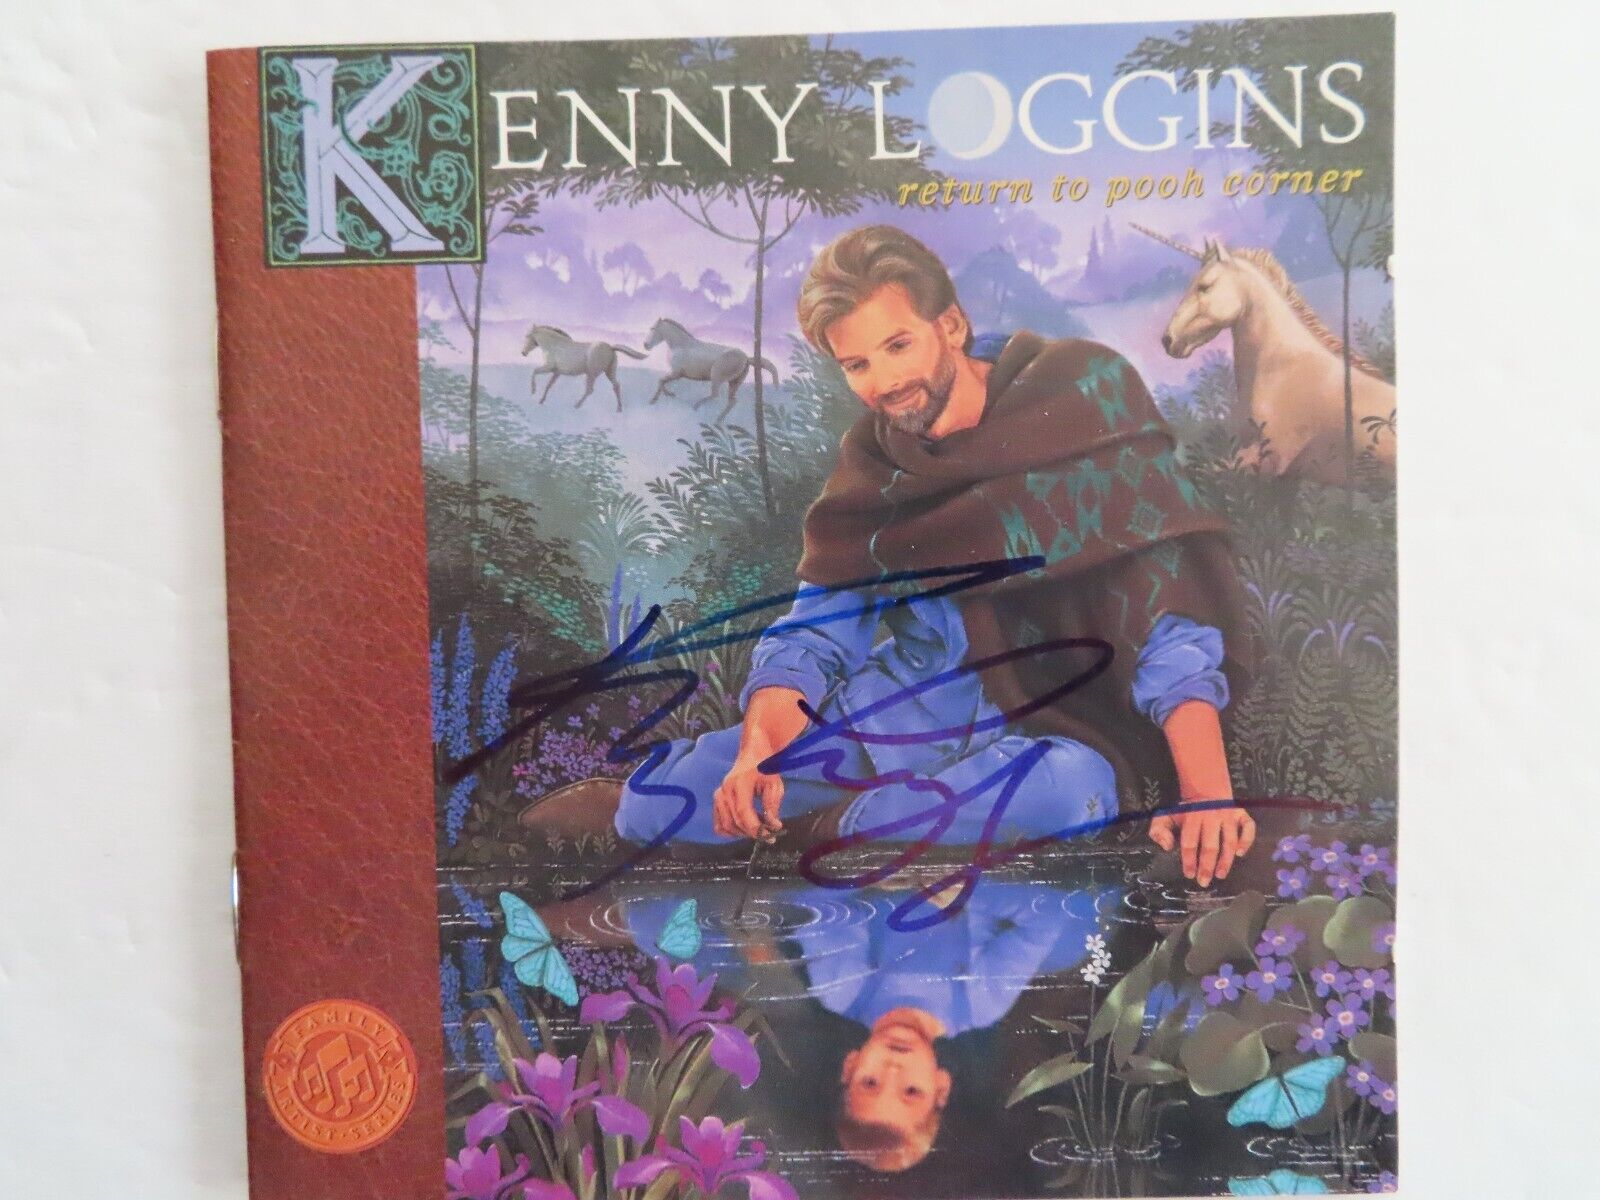 Signed Autographed CD Booklet Kenny Loggins - Return To Pooh Corner